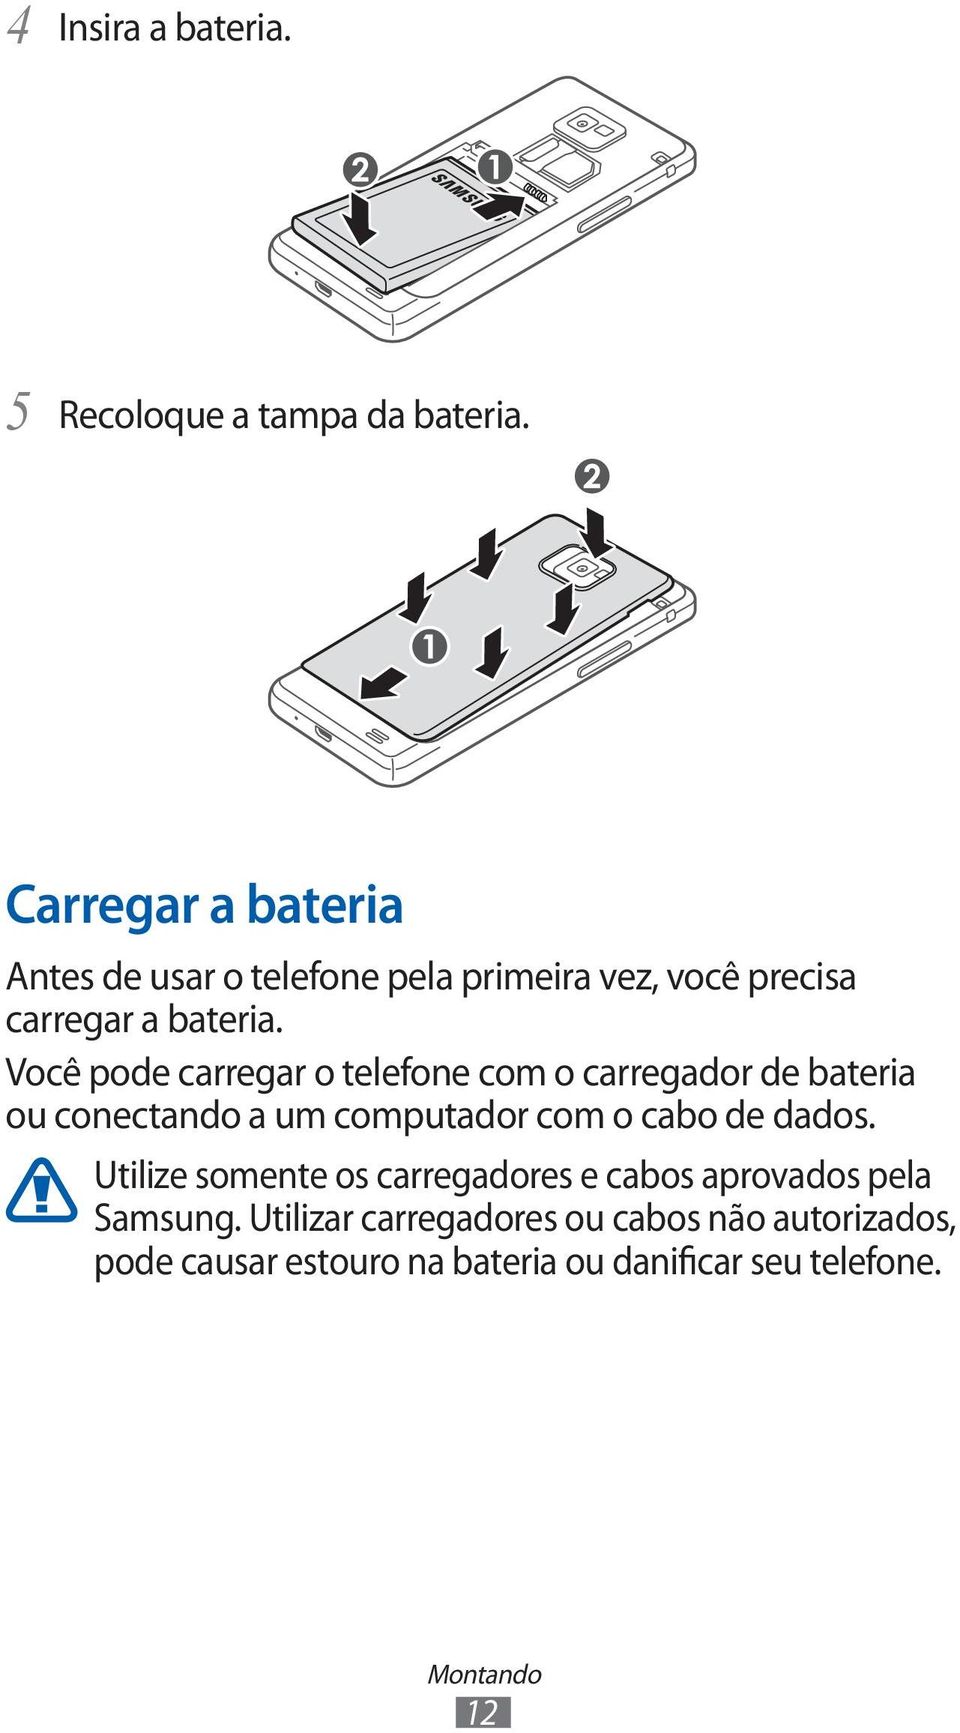 Você pode carregar o telefone com o carregador de bateria ou conectando a um computador com o cabo de dados.